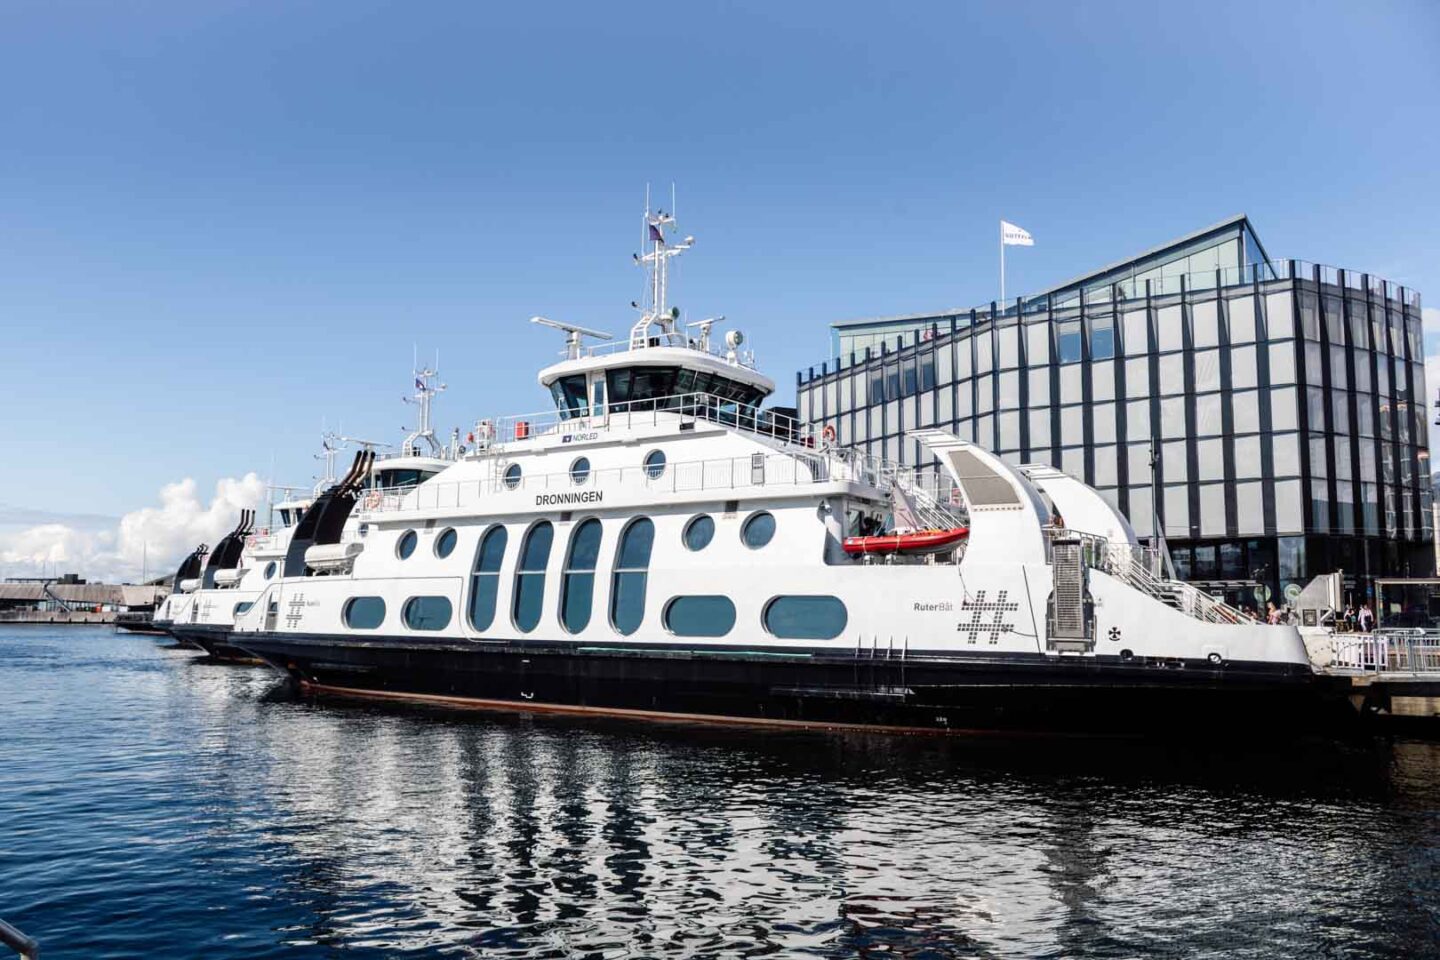 Aker Brygge ferry port in Oslo